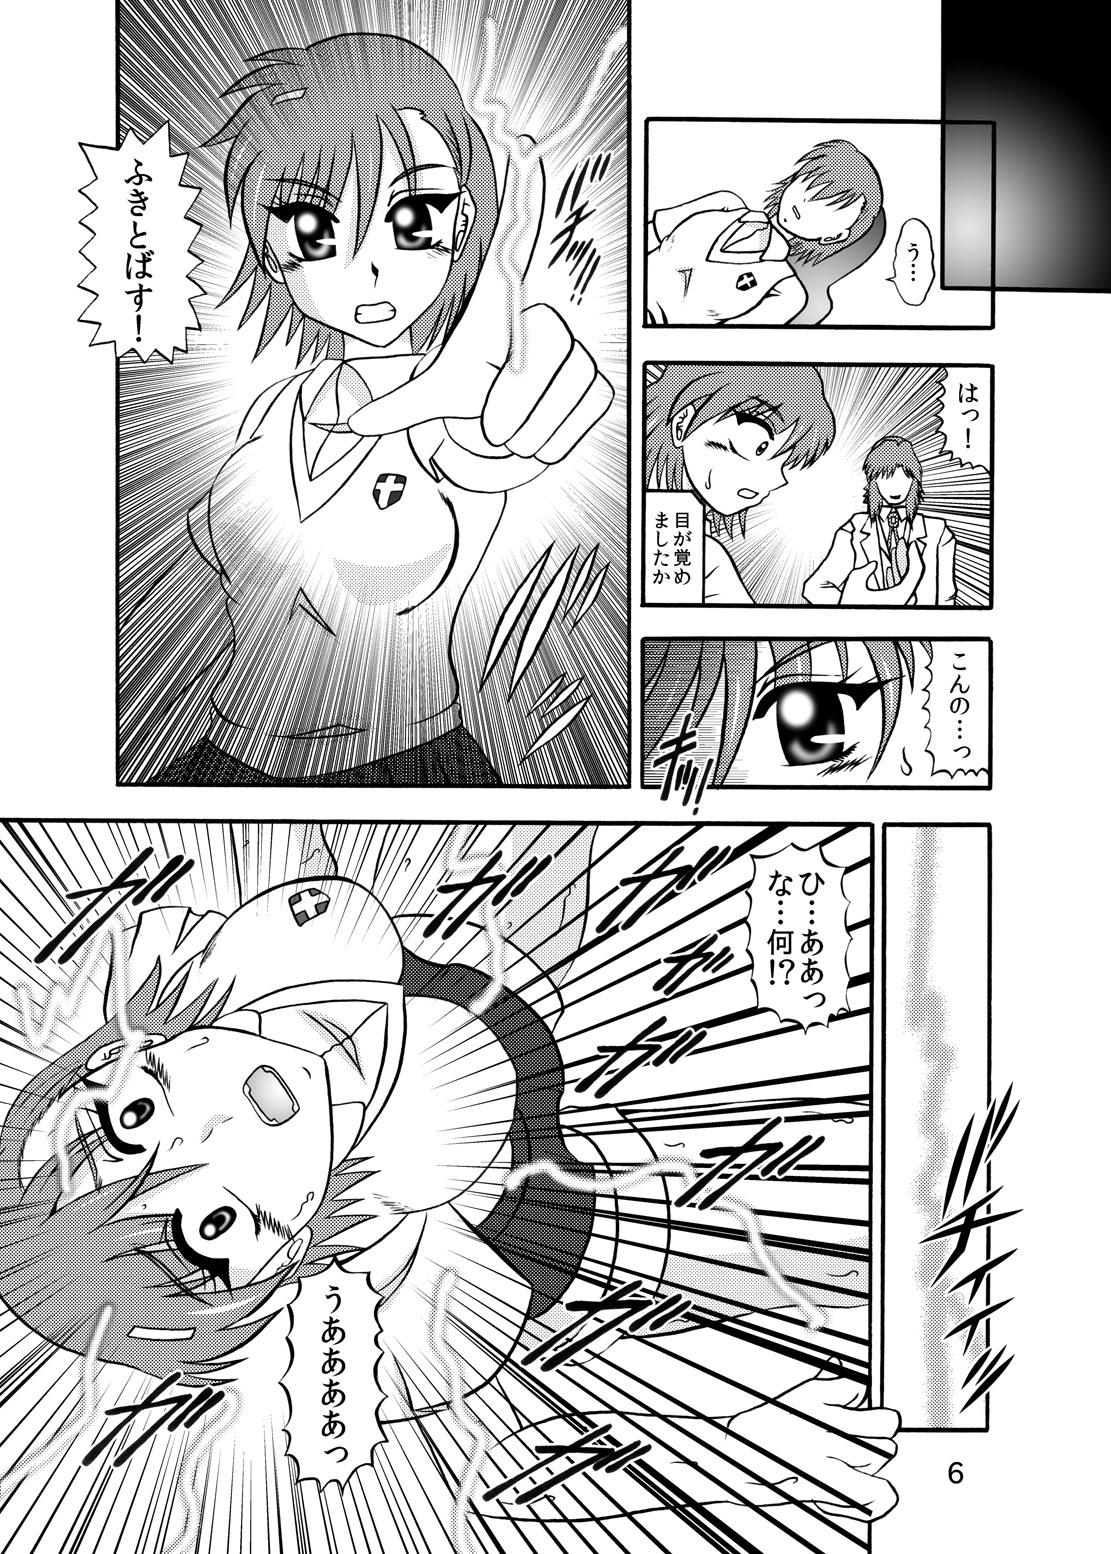 Cheerleader Inyoku Kaizou: Misaka Mikoto - Toaru kagaku no railgun Cei - Page 4